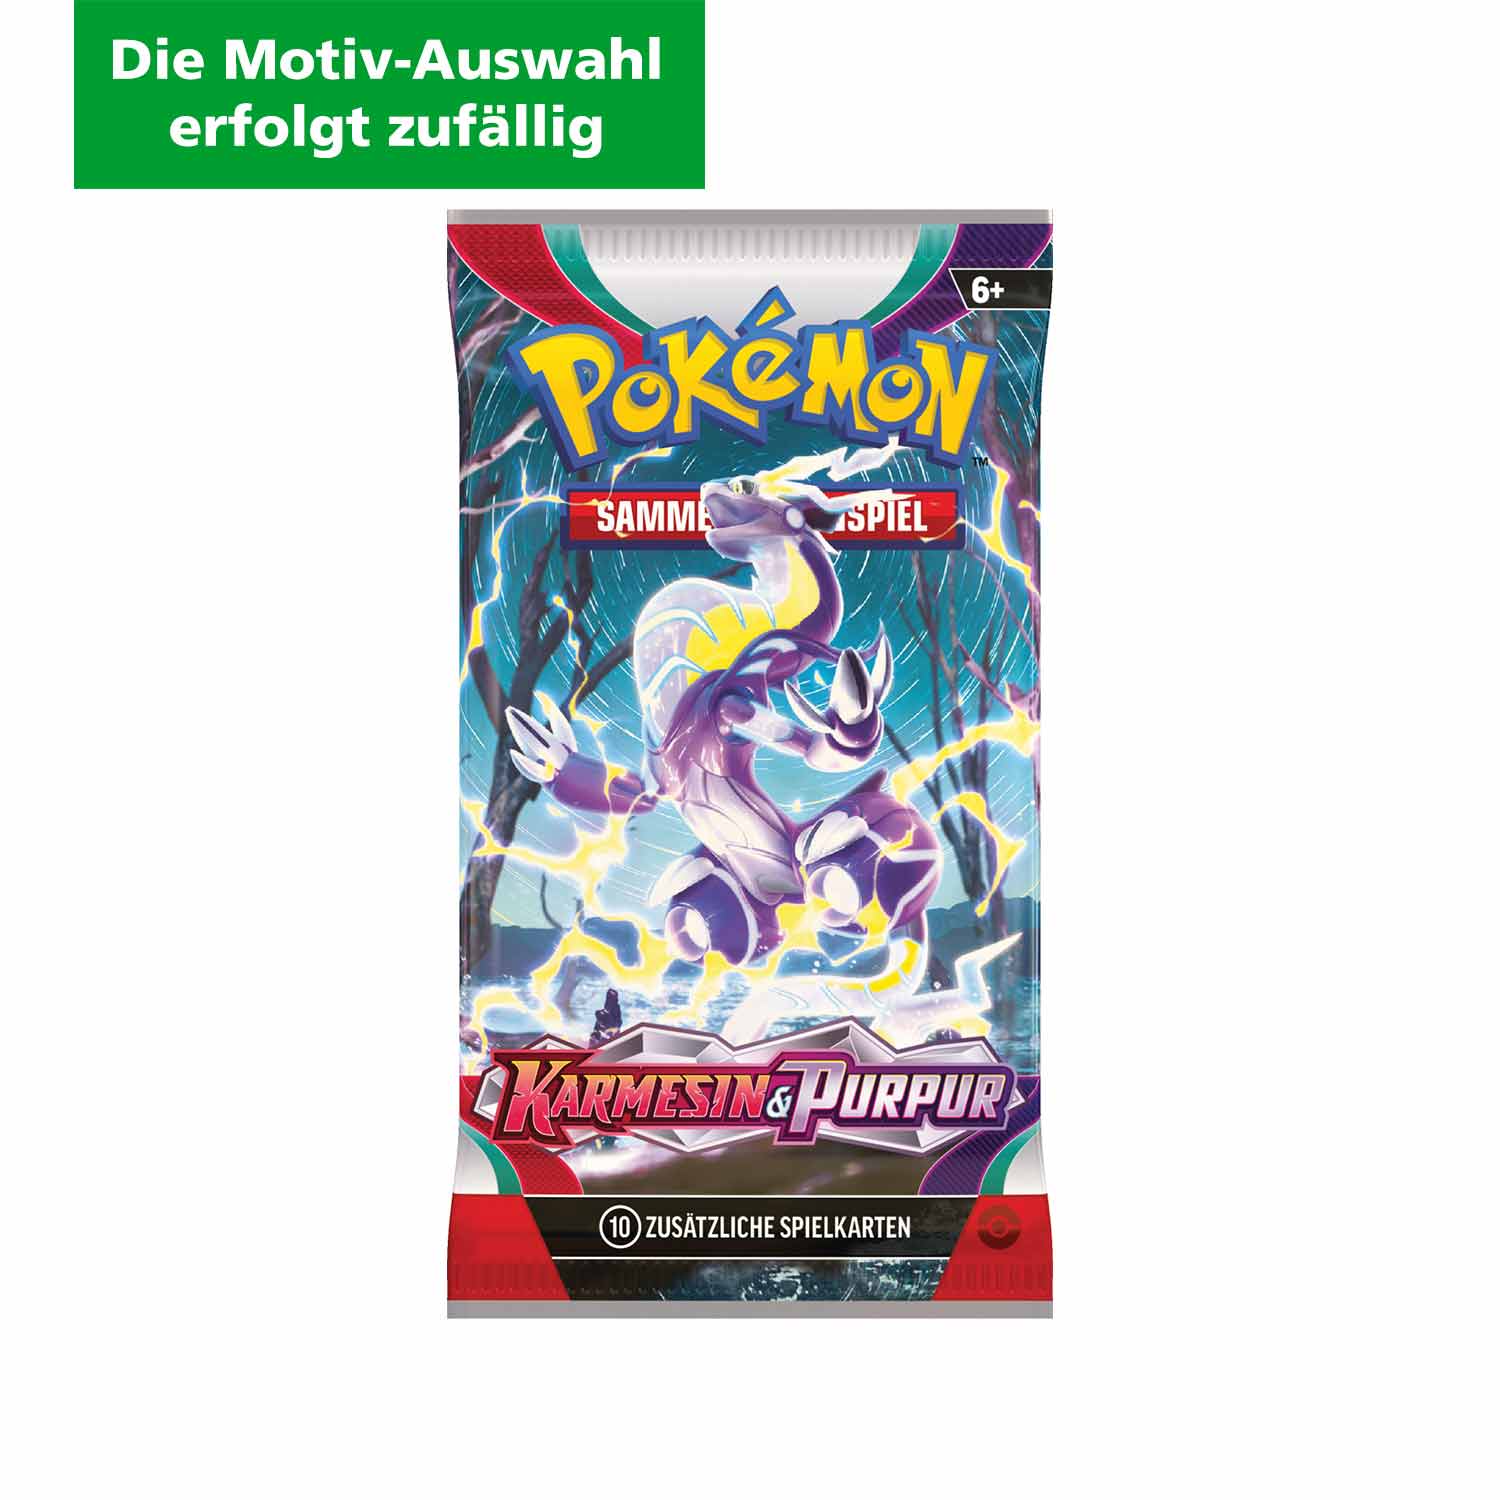 Pokémon Boosterpack Sammelkarten Karmesin & Purpur DE (Die Motiv-Auswahl erfolgt zufällig)